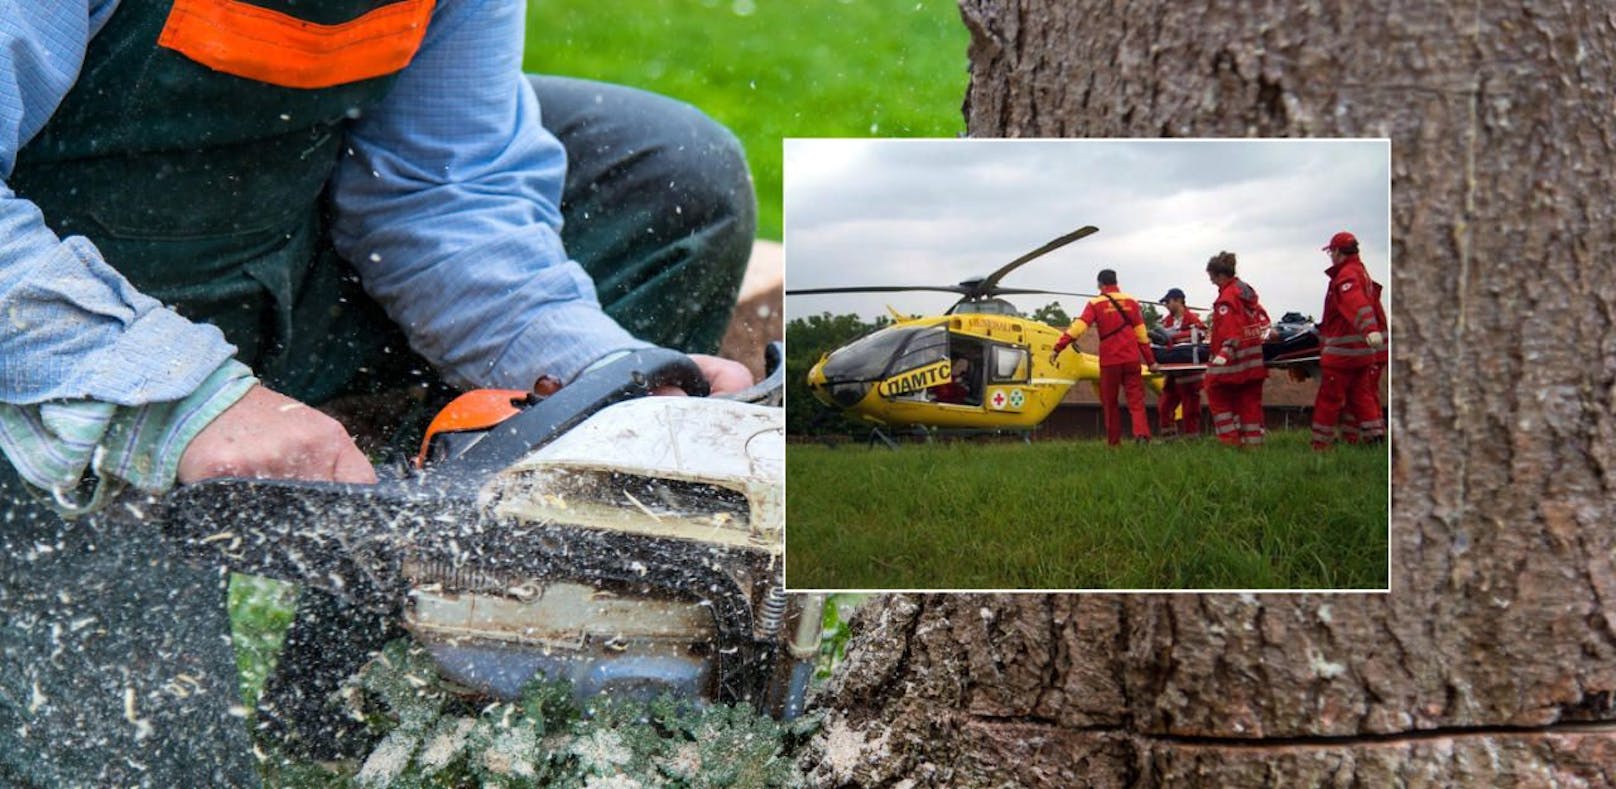 Schwer verletzt: Baum fiel bei Forstarbeiten auf Mann